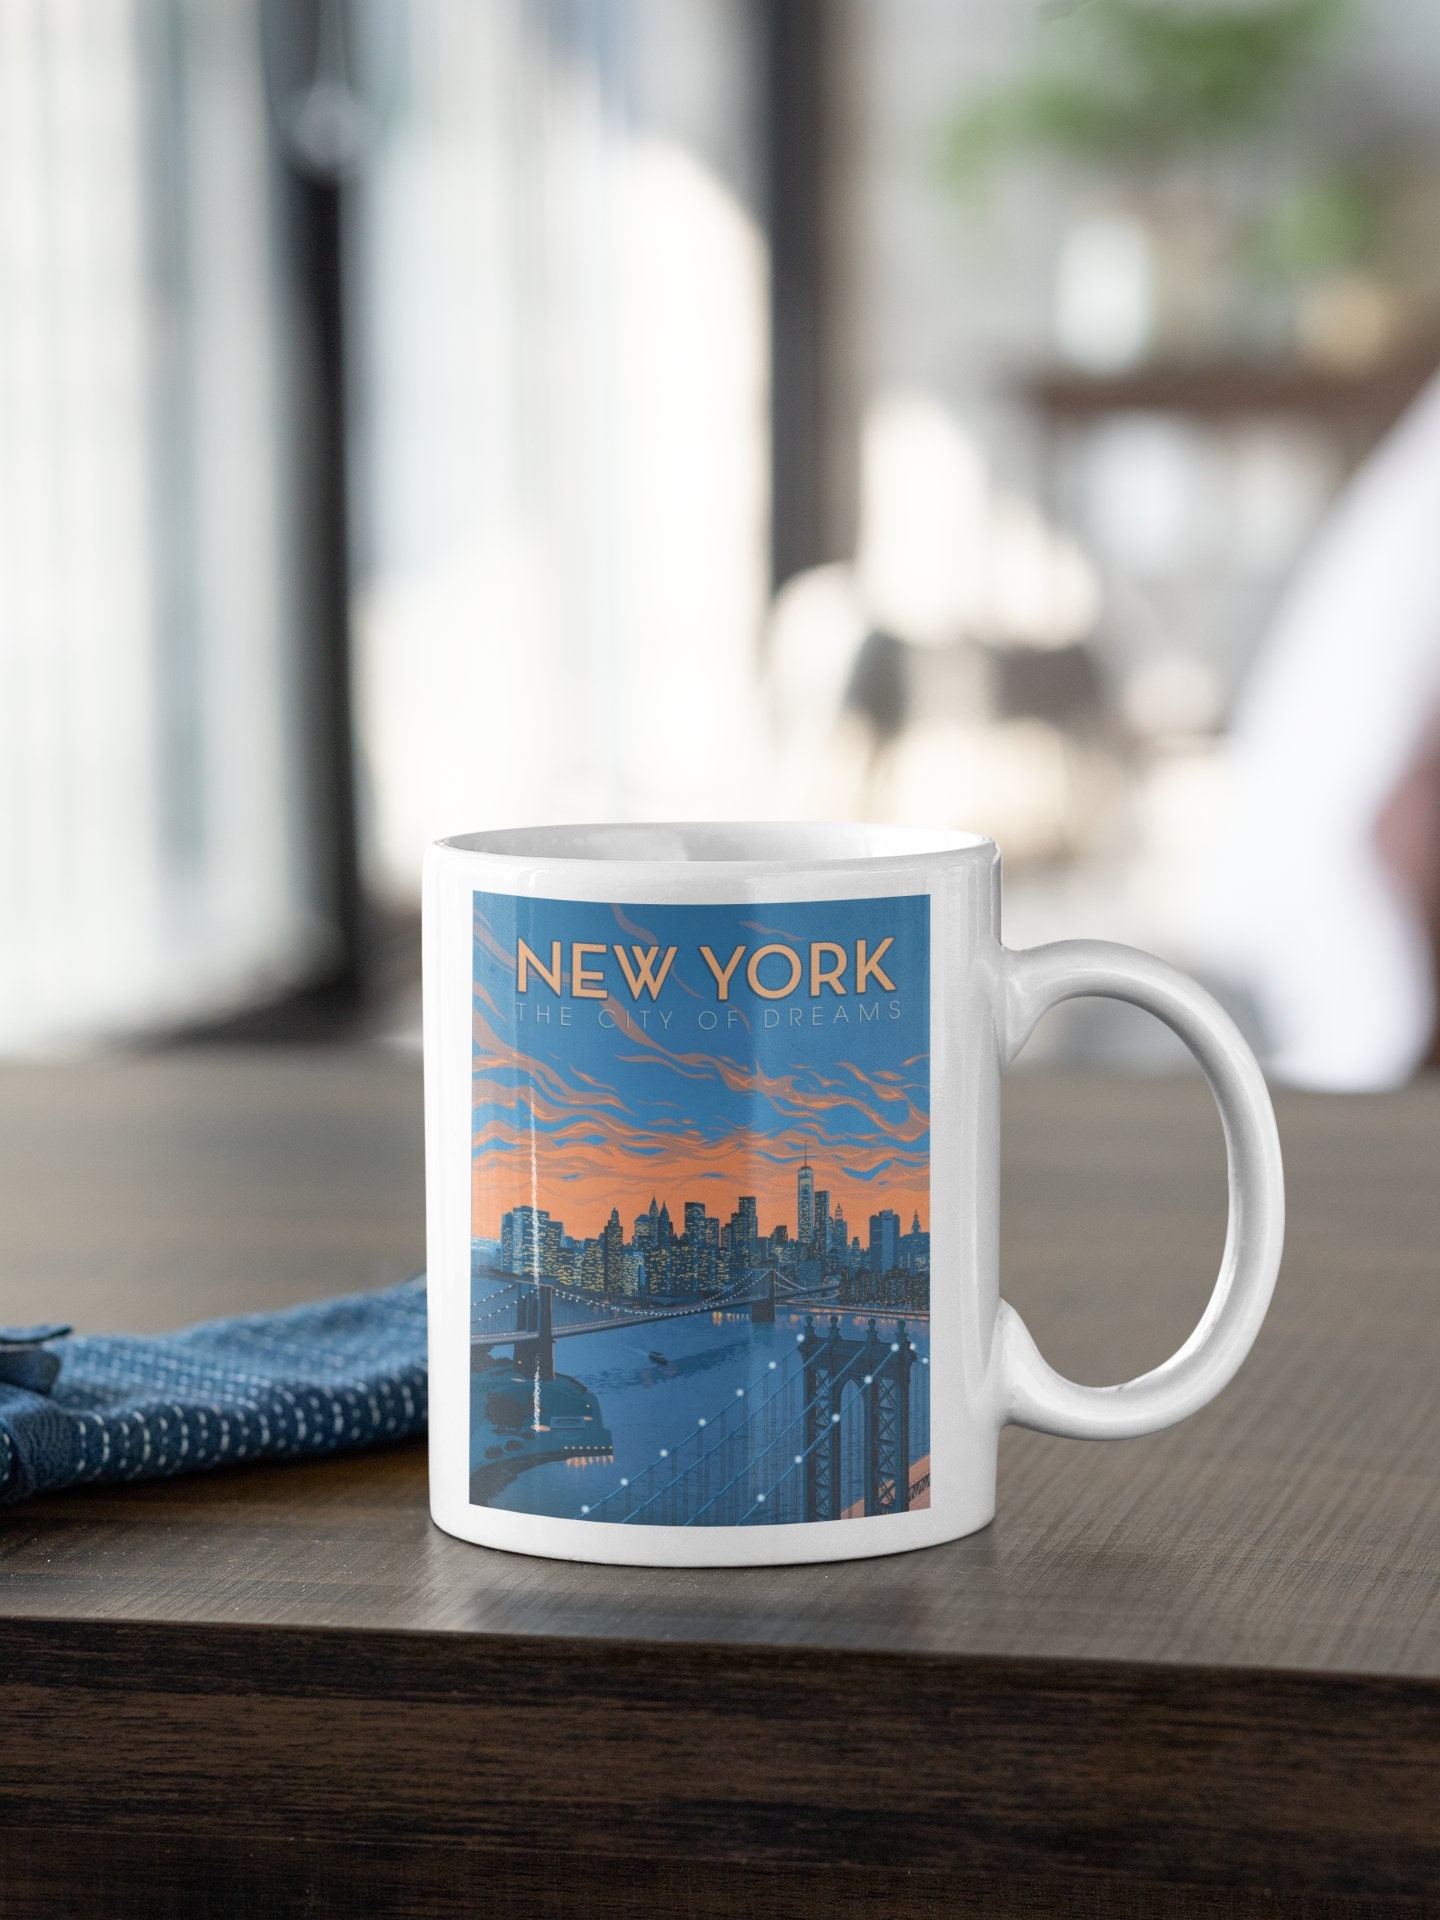 Discover New York City Of Dreams US Ceramic Mug Gift Souvenir